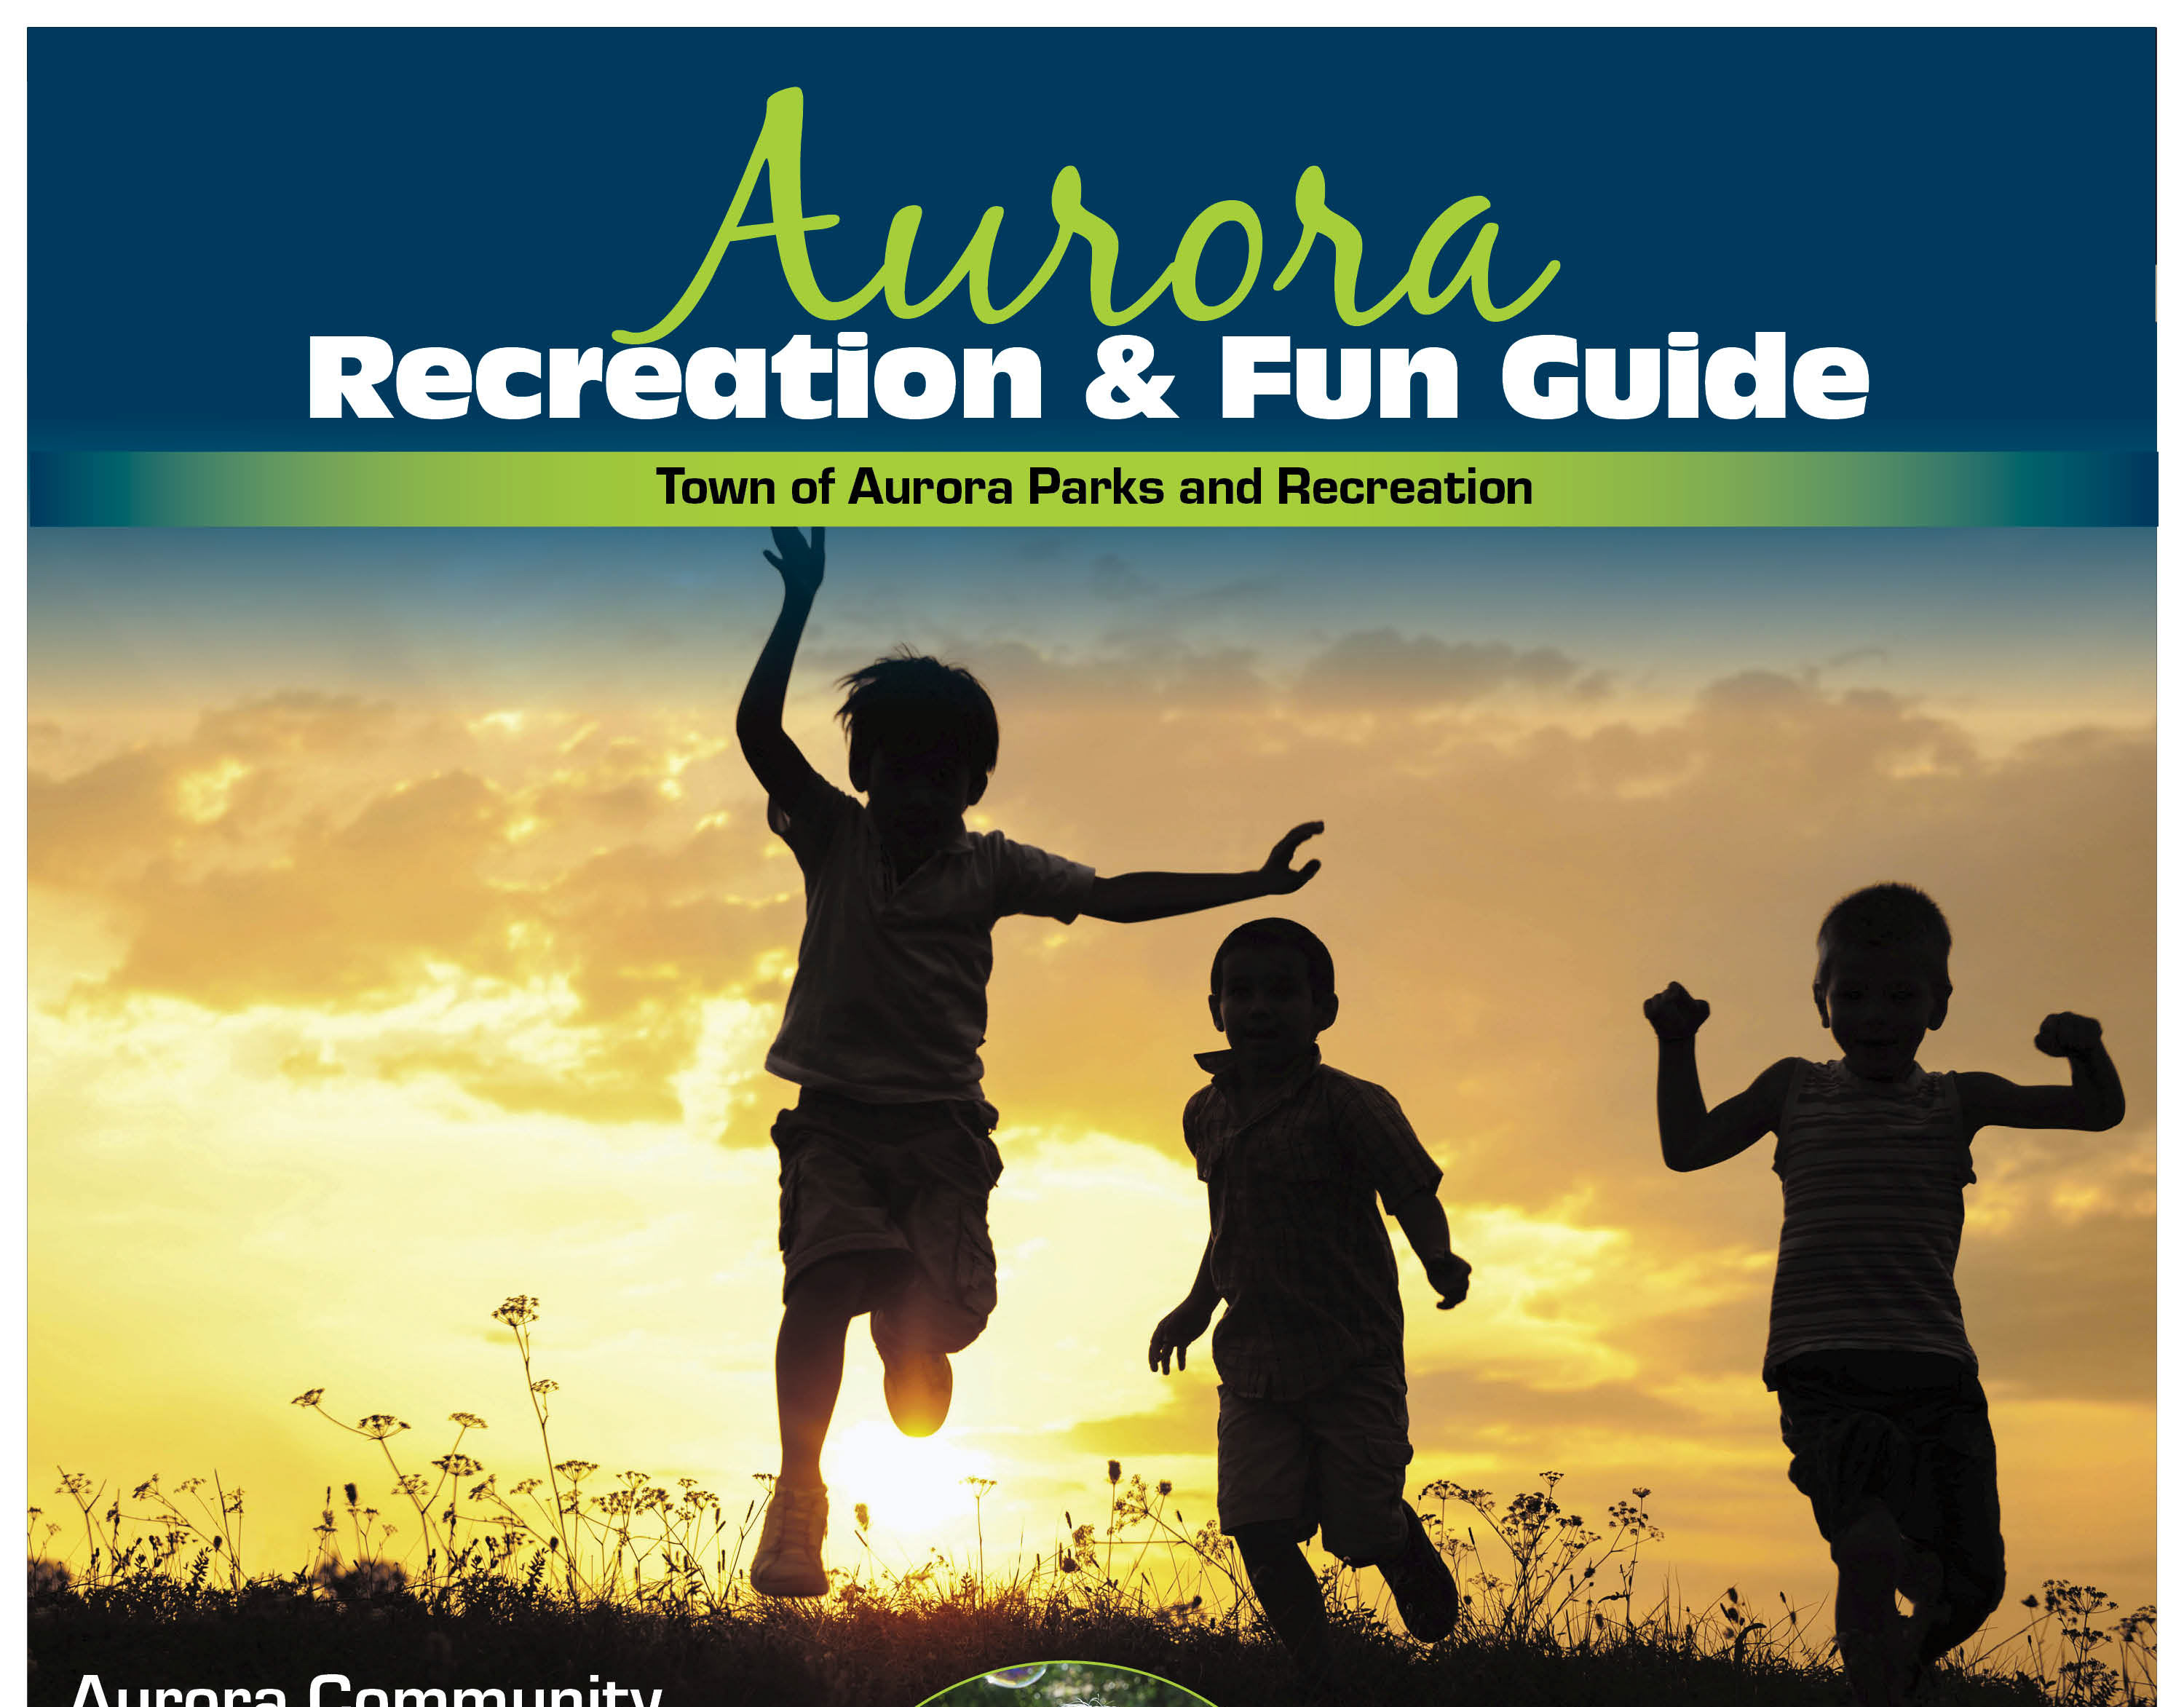 East Aurora Advertiser Portfolio Aurora Recreation & Fun Guide 2021